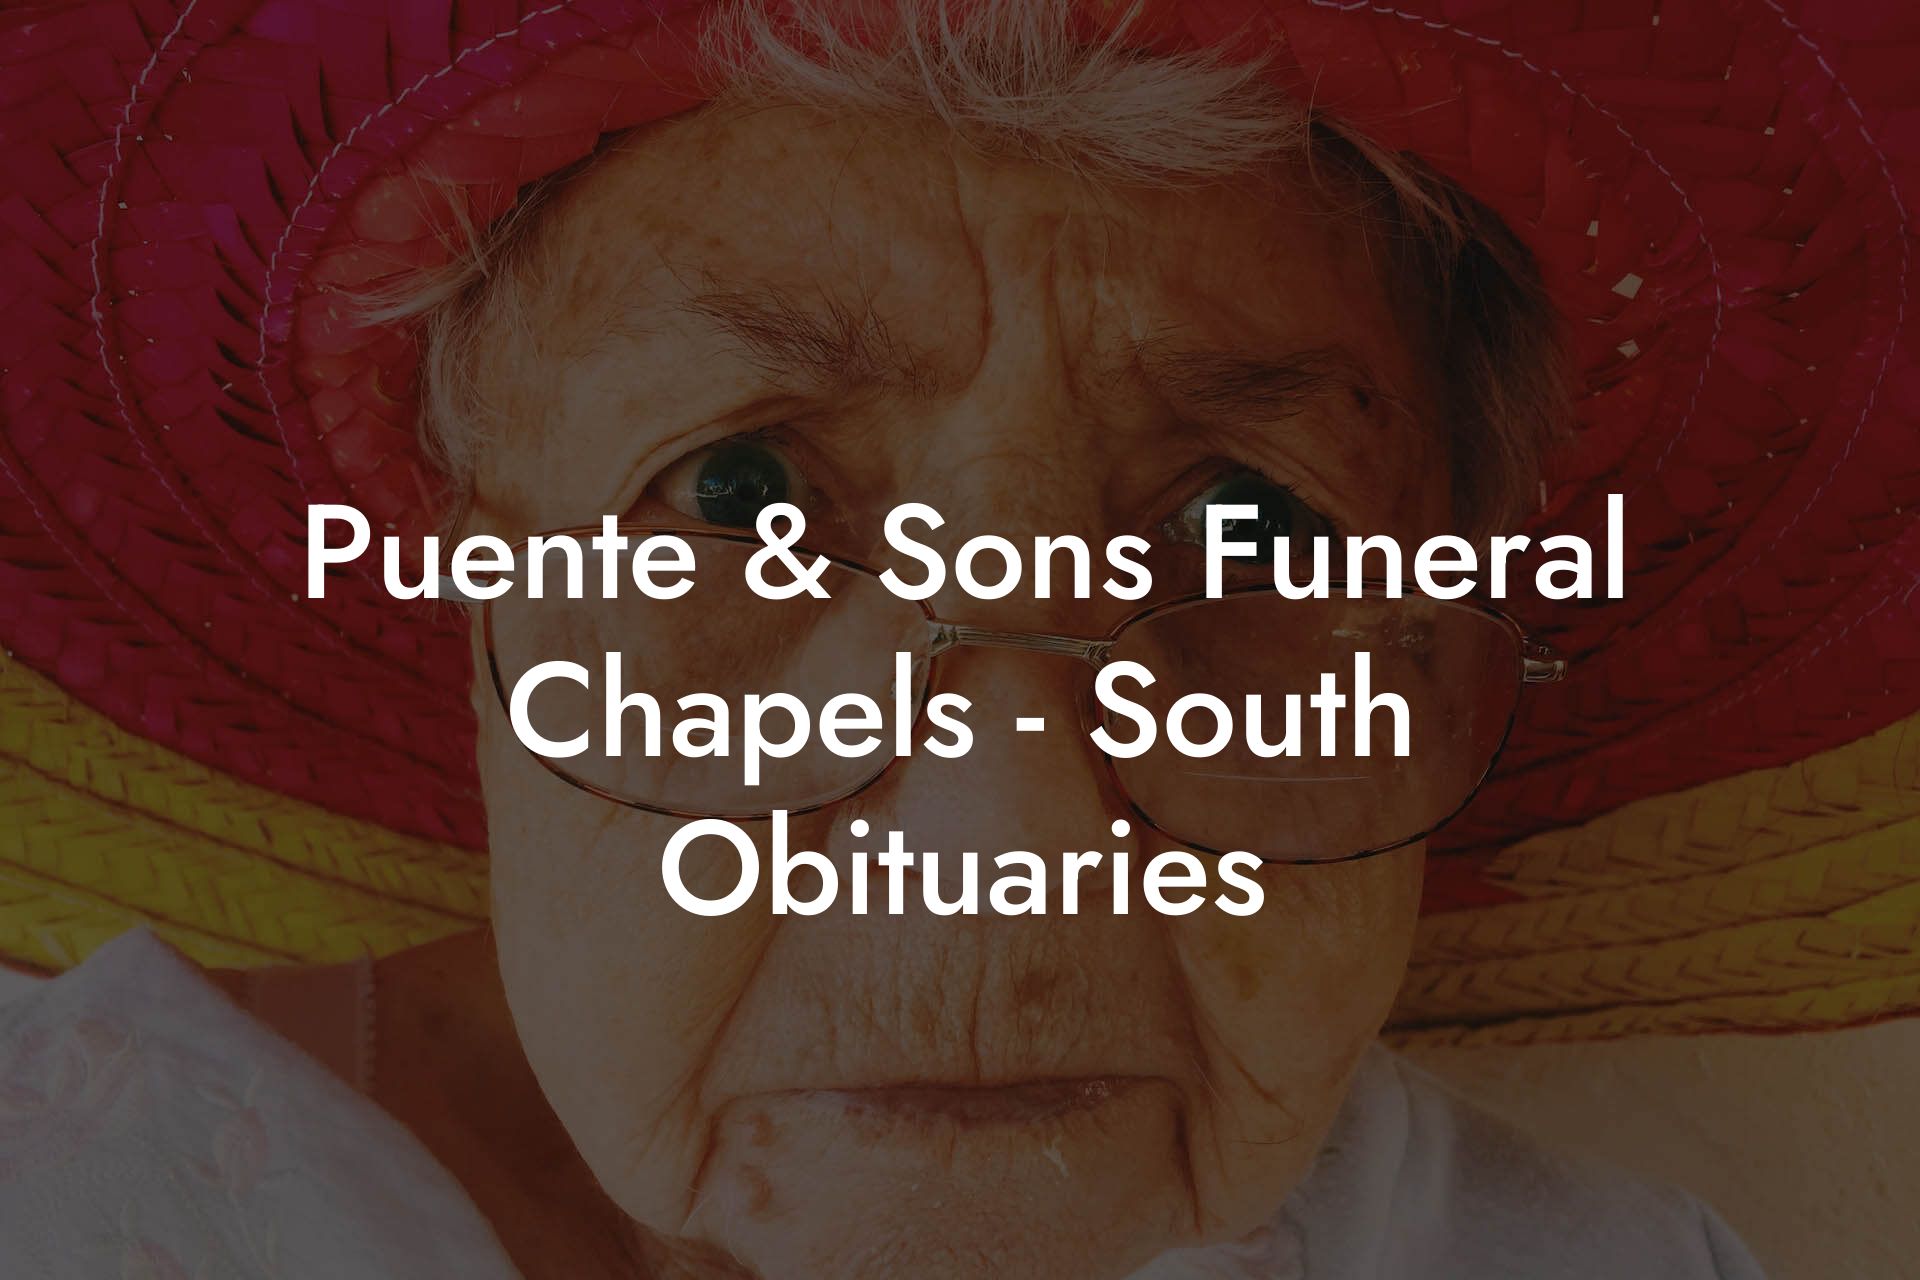 Puente & Sons Funeral Chapels - South Obituaries